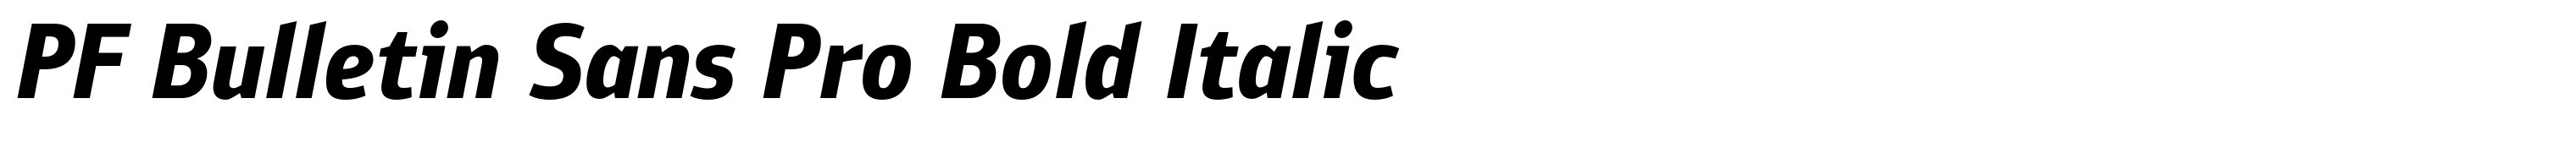 PF Bulletin Sans Pro Bold Italic